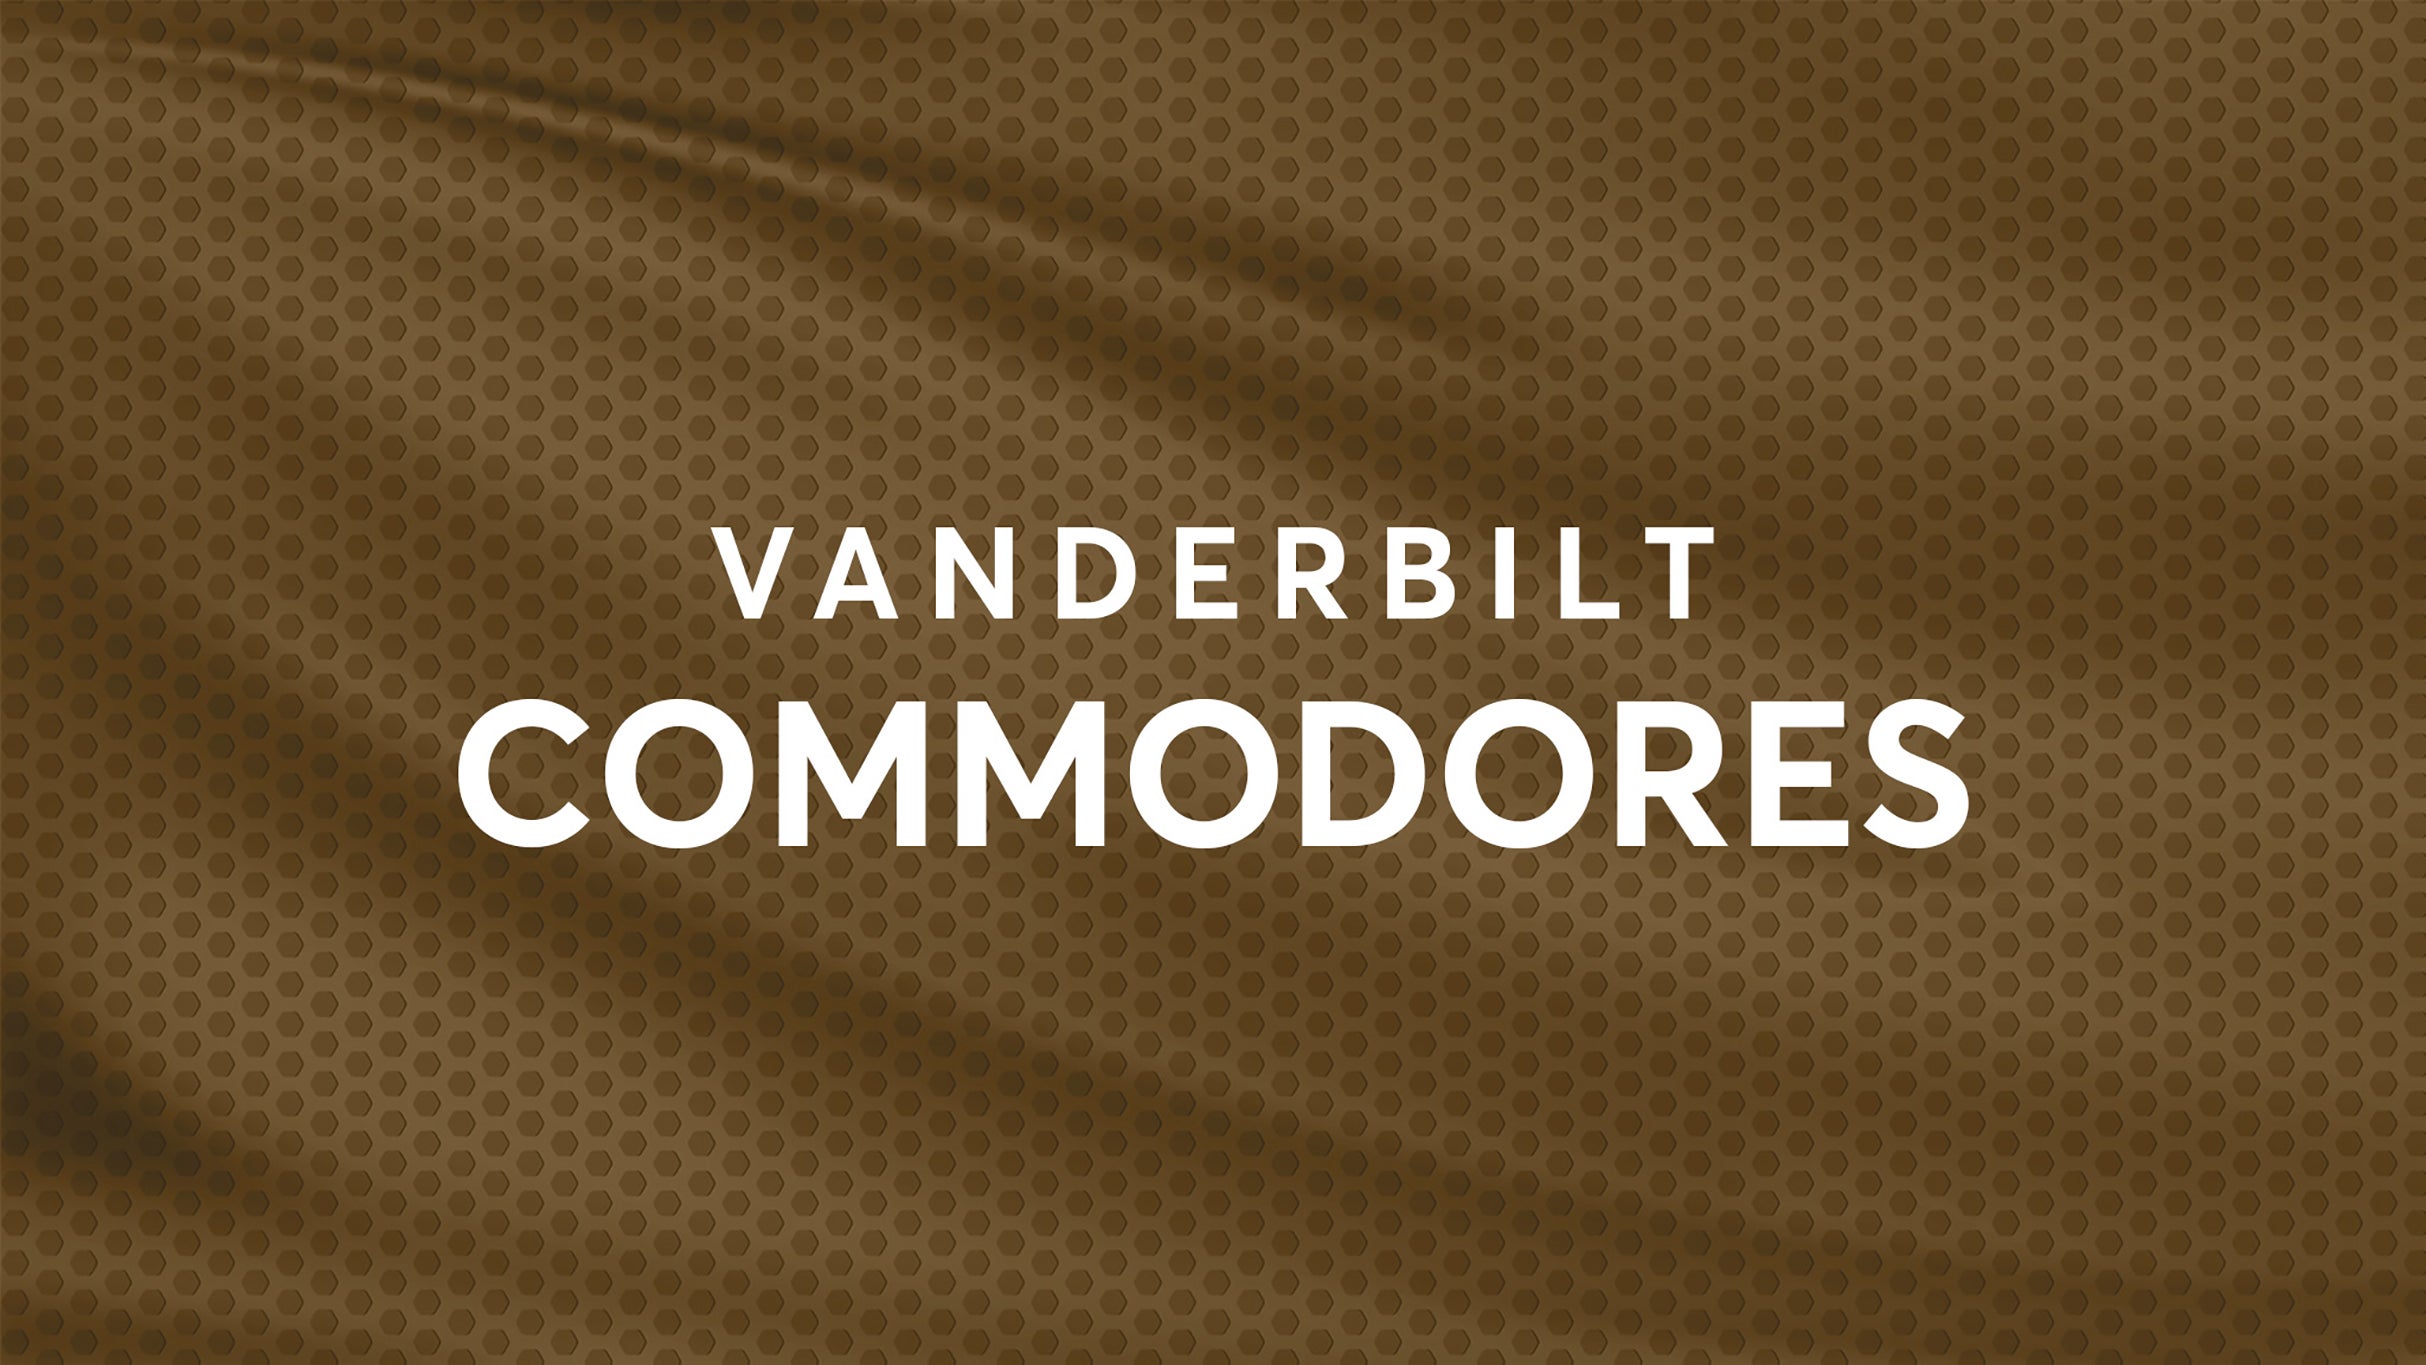 Vanderbilt Commodores Football vs. Texas Longhorns Football hero